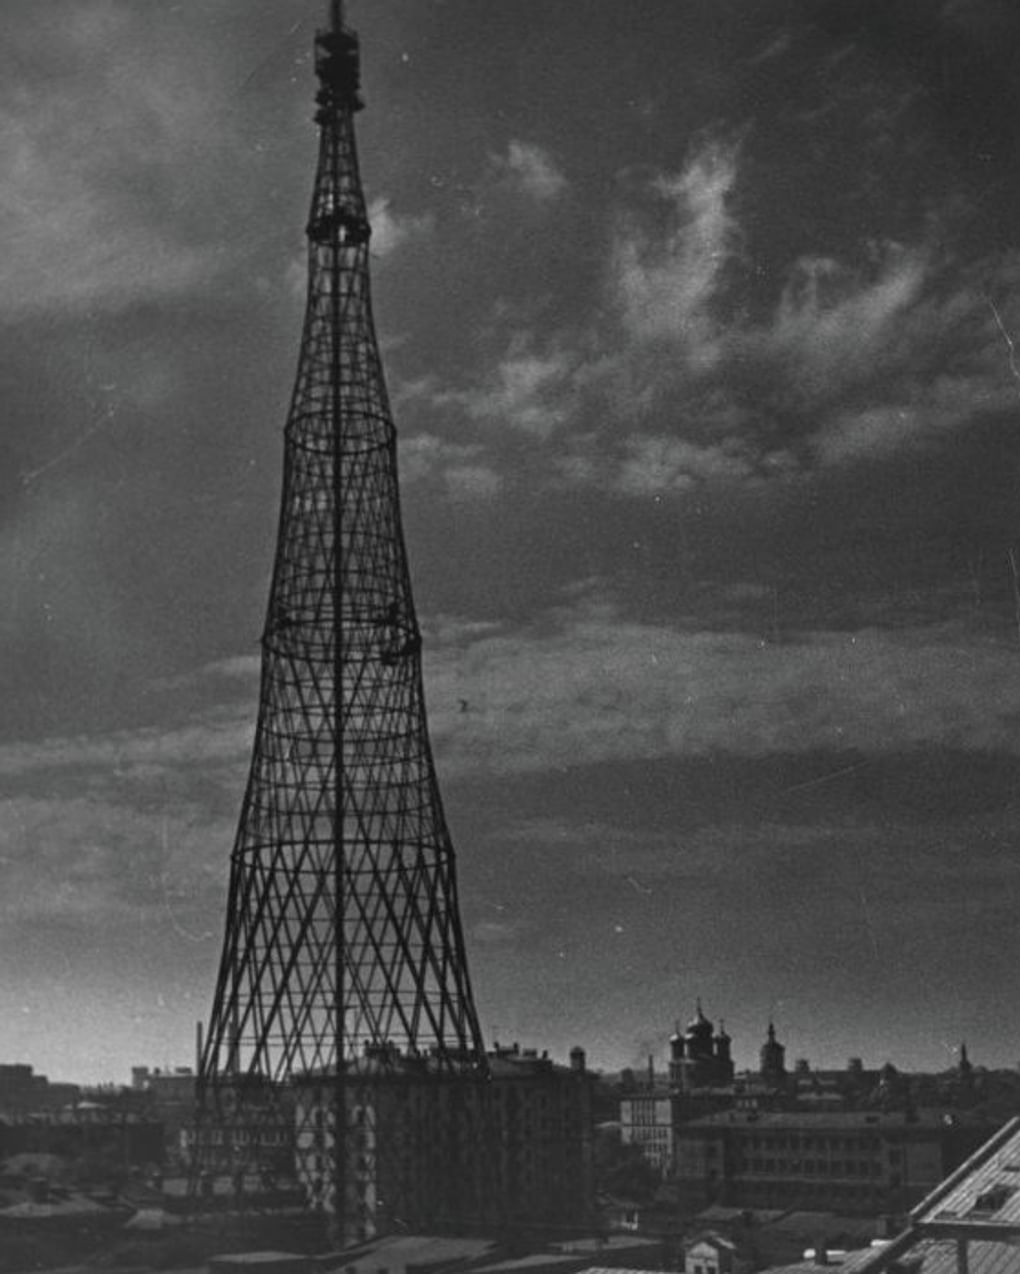 Шуховская башня. Москва, 1955 год. Фотография: Сергей Васин / Мультимедиа Арт Музей, Москва